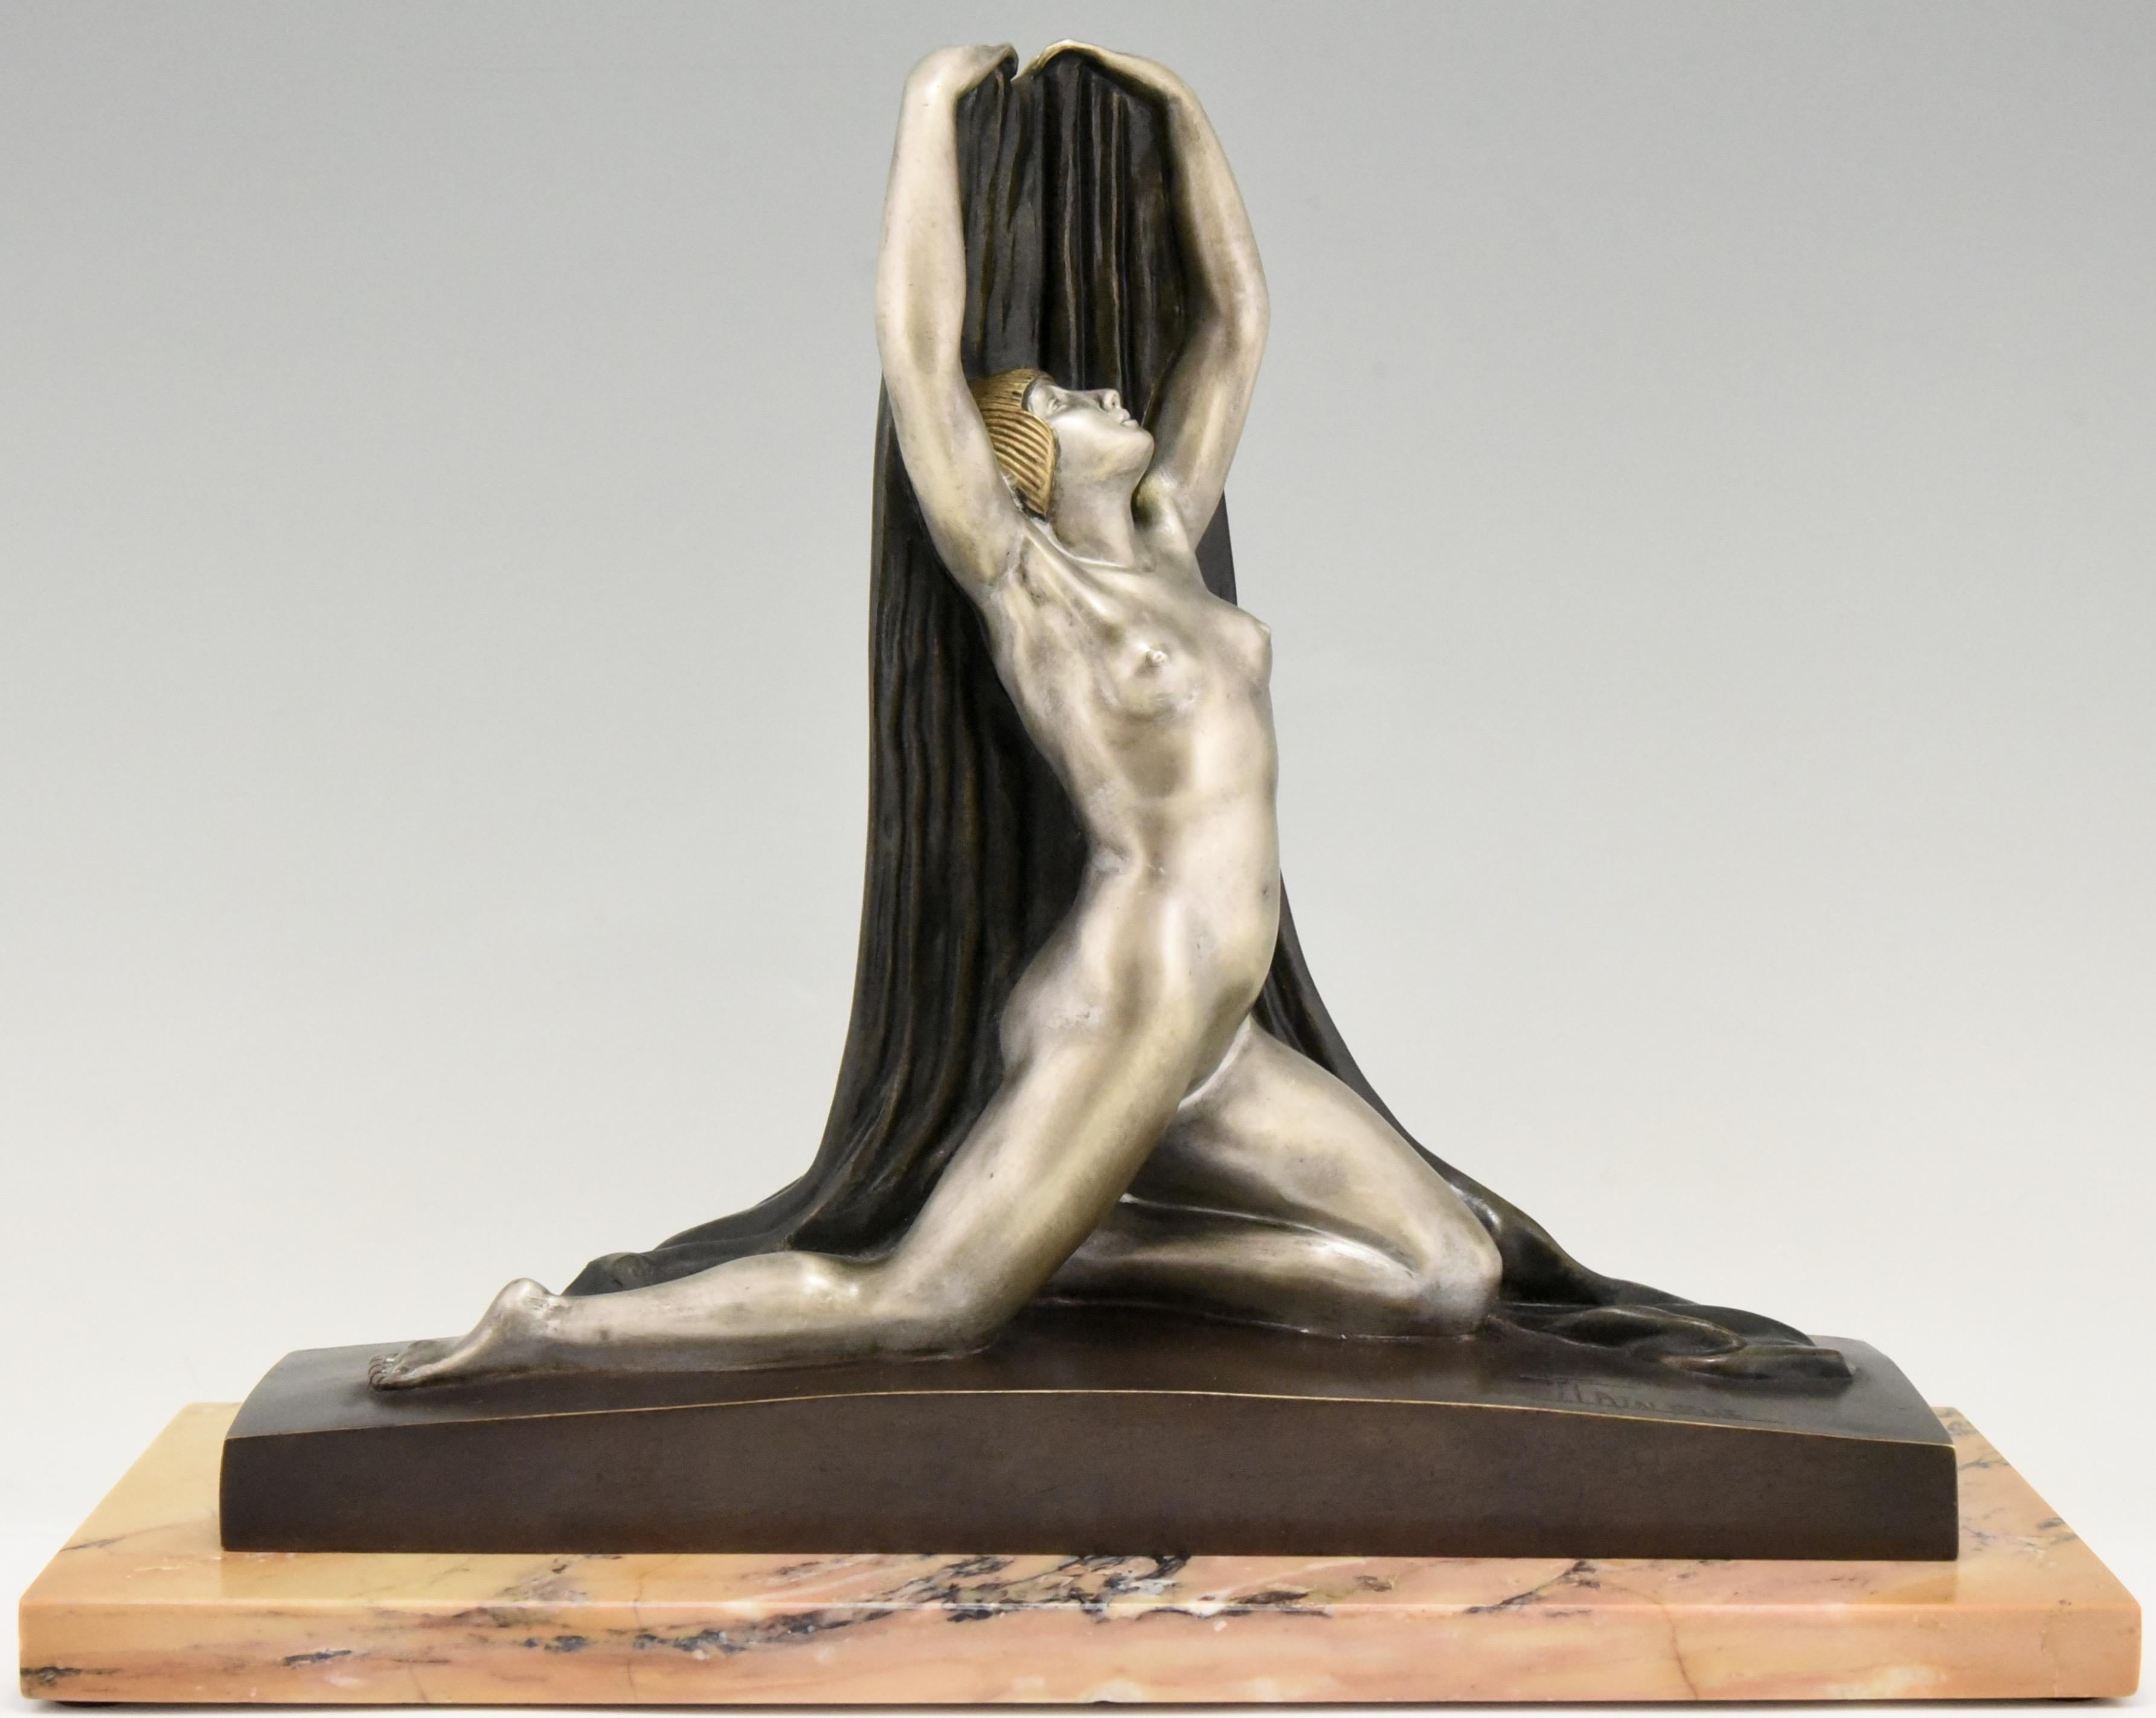 Art-Deco-Bronzeskulptur eines Aktes in gespaltener Haltung mit ausgestrecktem Arm, der ein Tuch hinter sich hält, auf einem Marmorsockel. Schöne mehrfarbige Patina. In der Bronze signiert F. Trinque, um 1920.
Elton John hatte die gleiche Bronze in